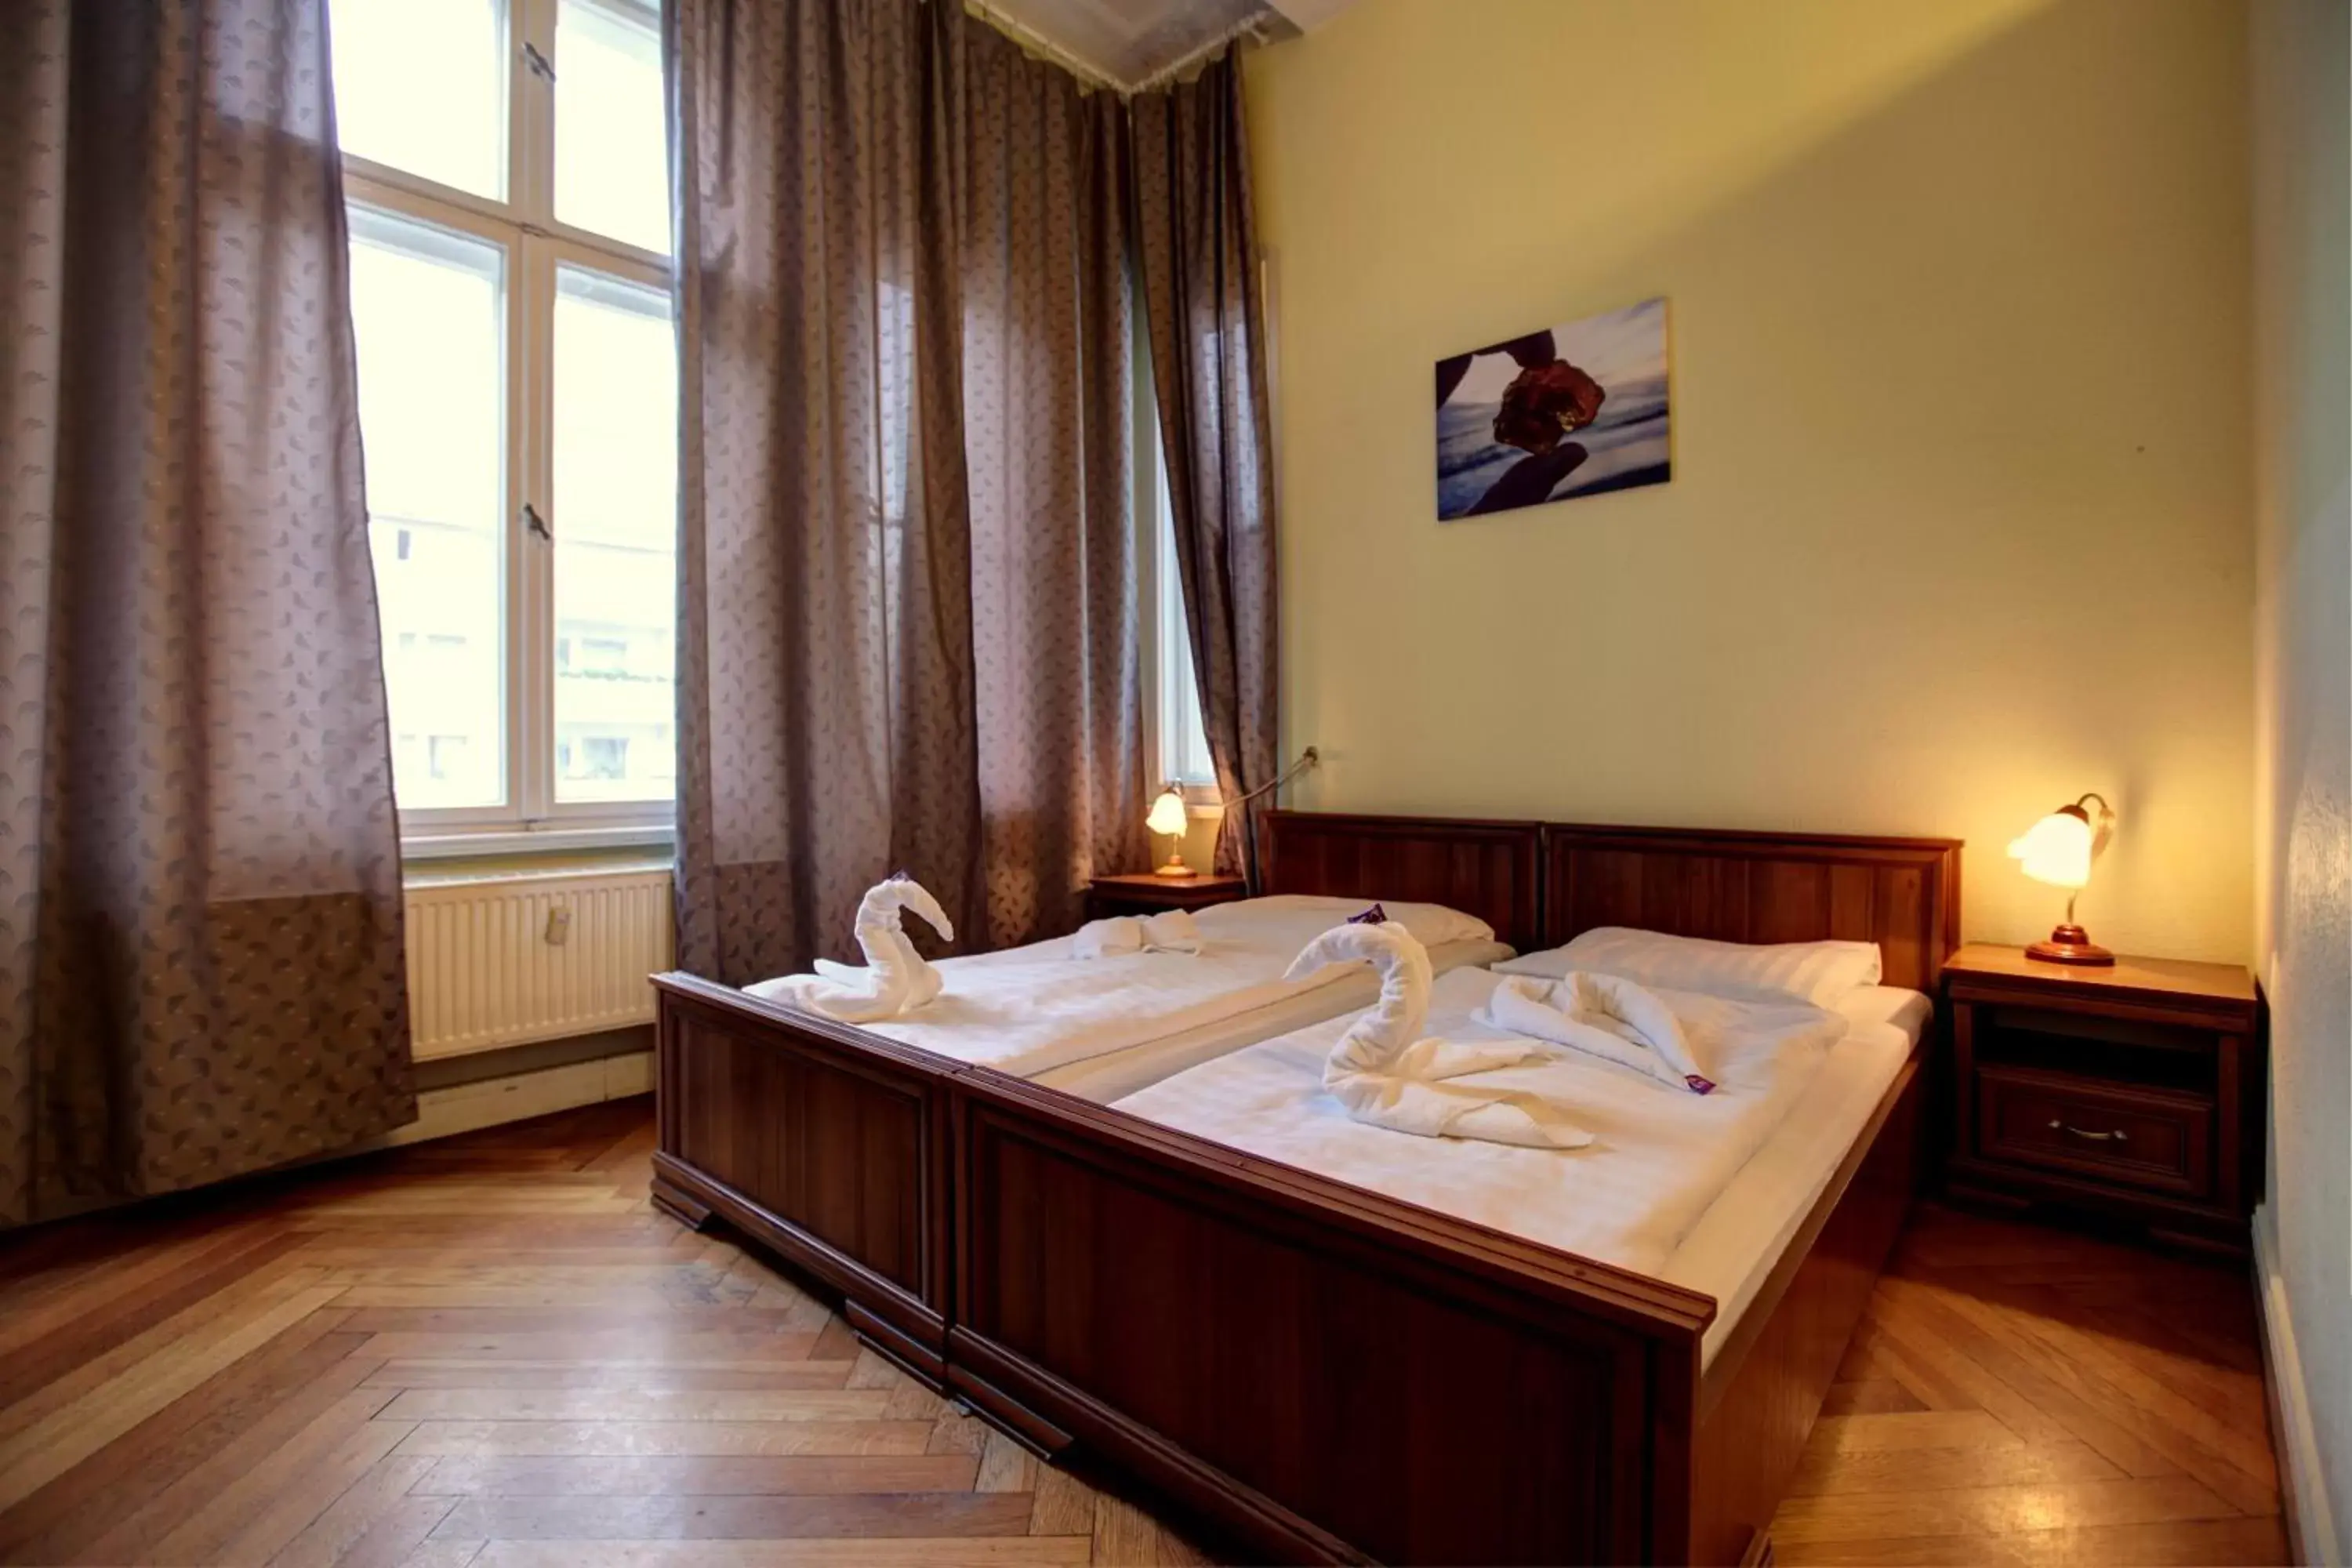 Bed in Hotel Pension Bernstein am Kurfürstendamm